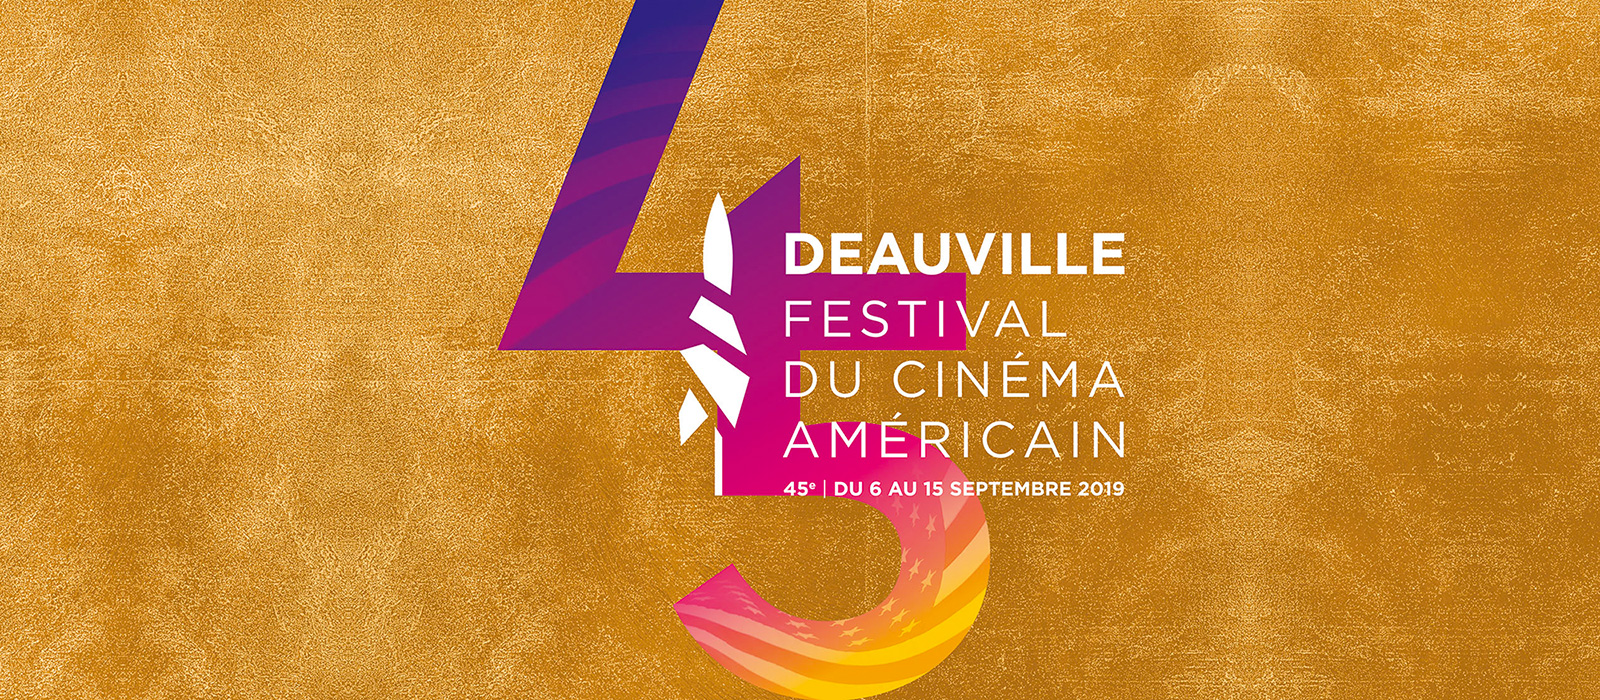 Deauville American Film Festival - September 2019